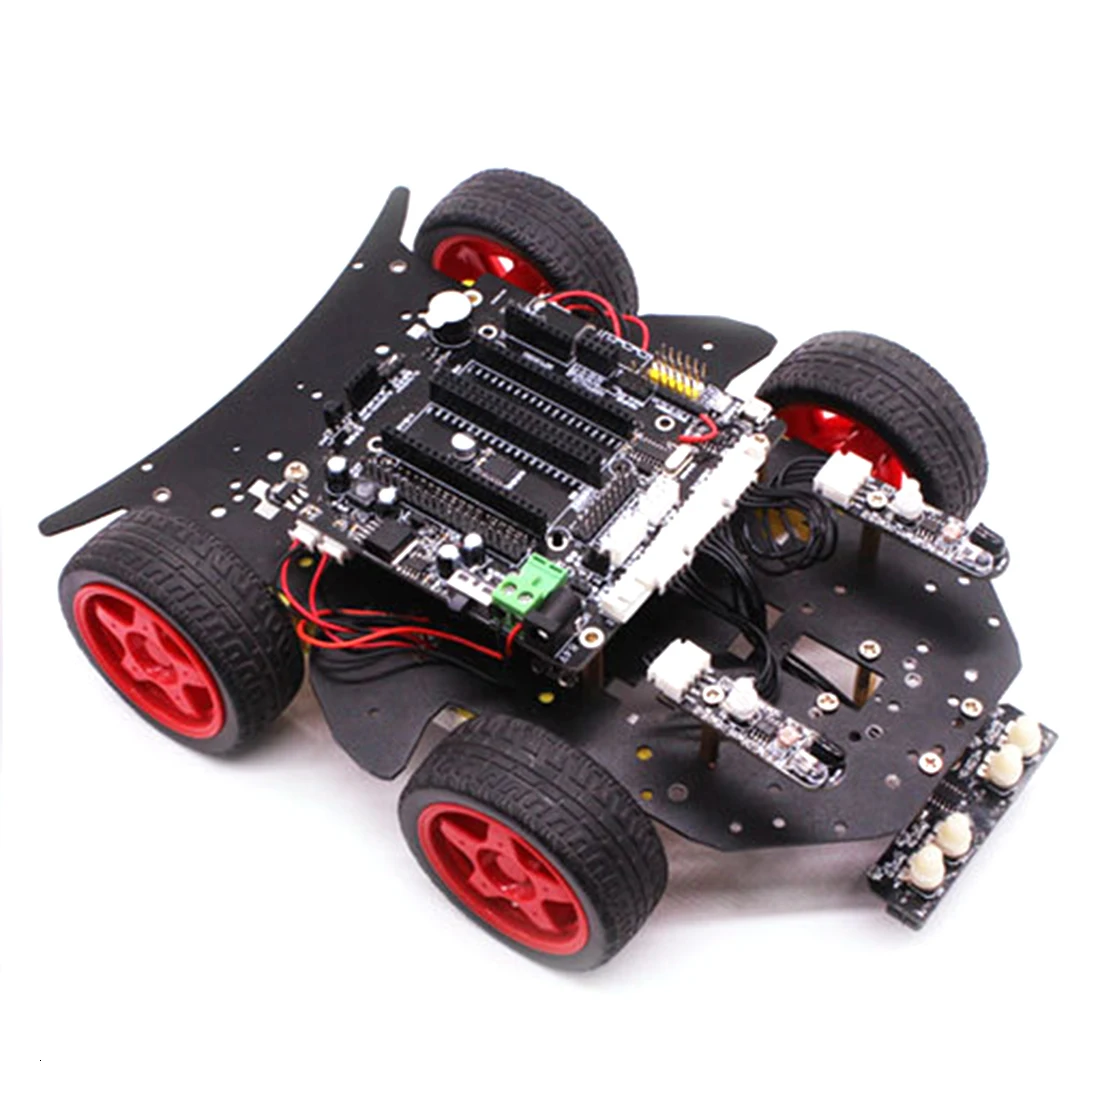 Rowsfire робот автомобиль 4wd Программирование стебель образование внедорожный свет отслеживание Робот Игрушки с учебником для Arduino Лидер